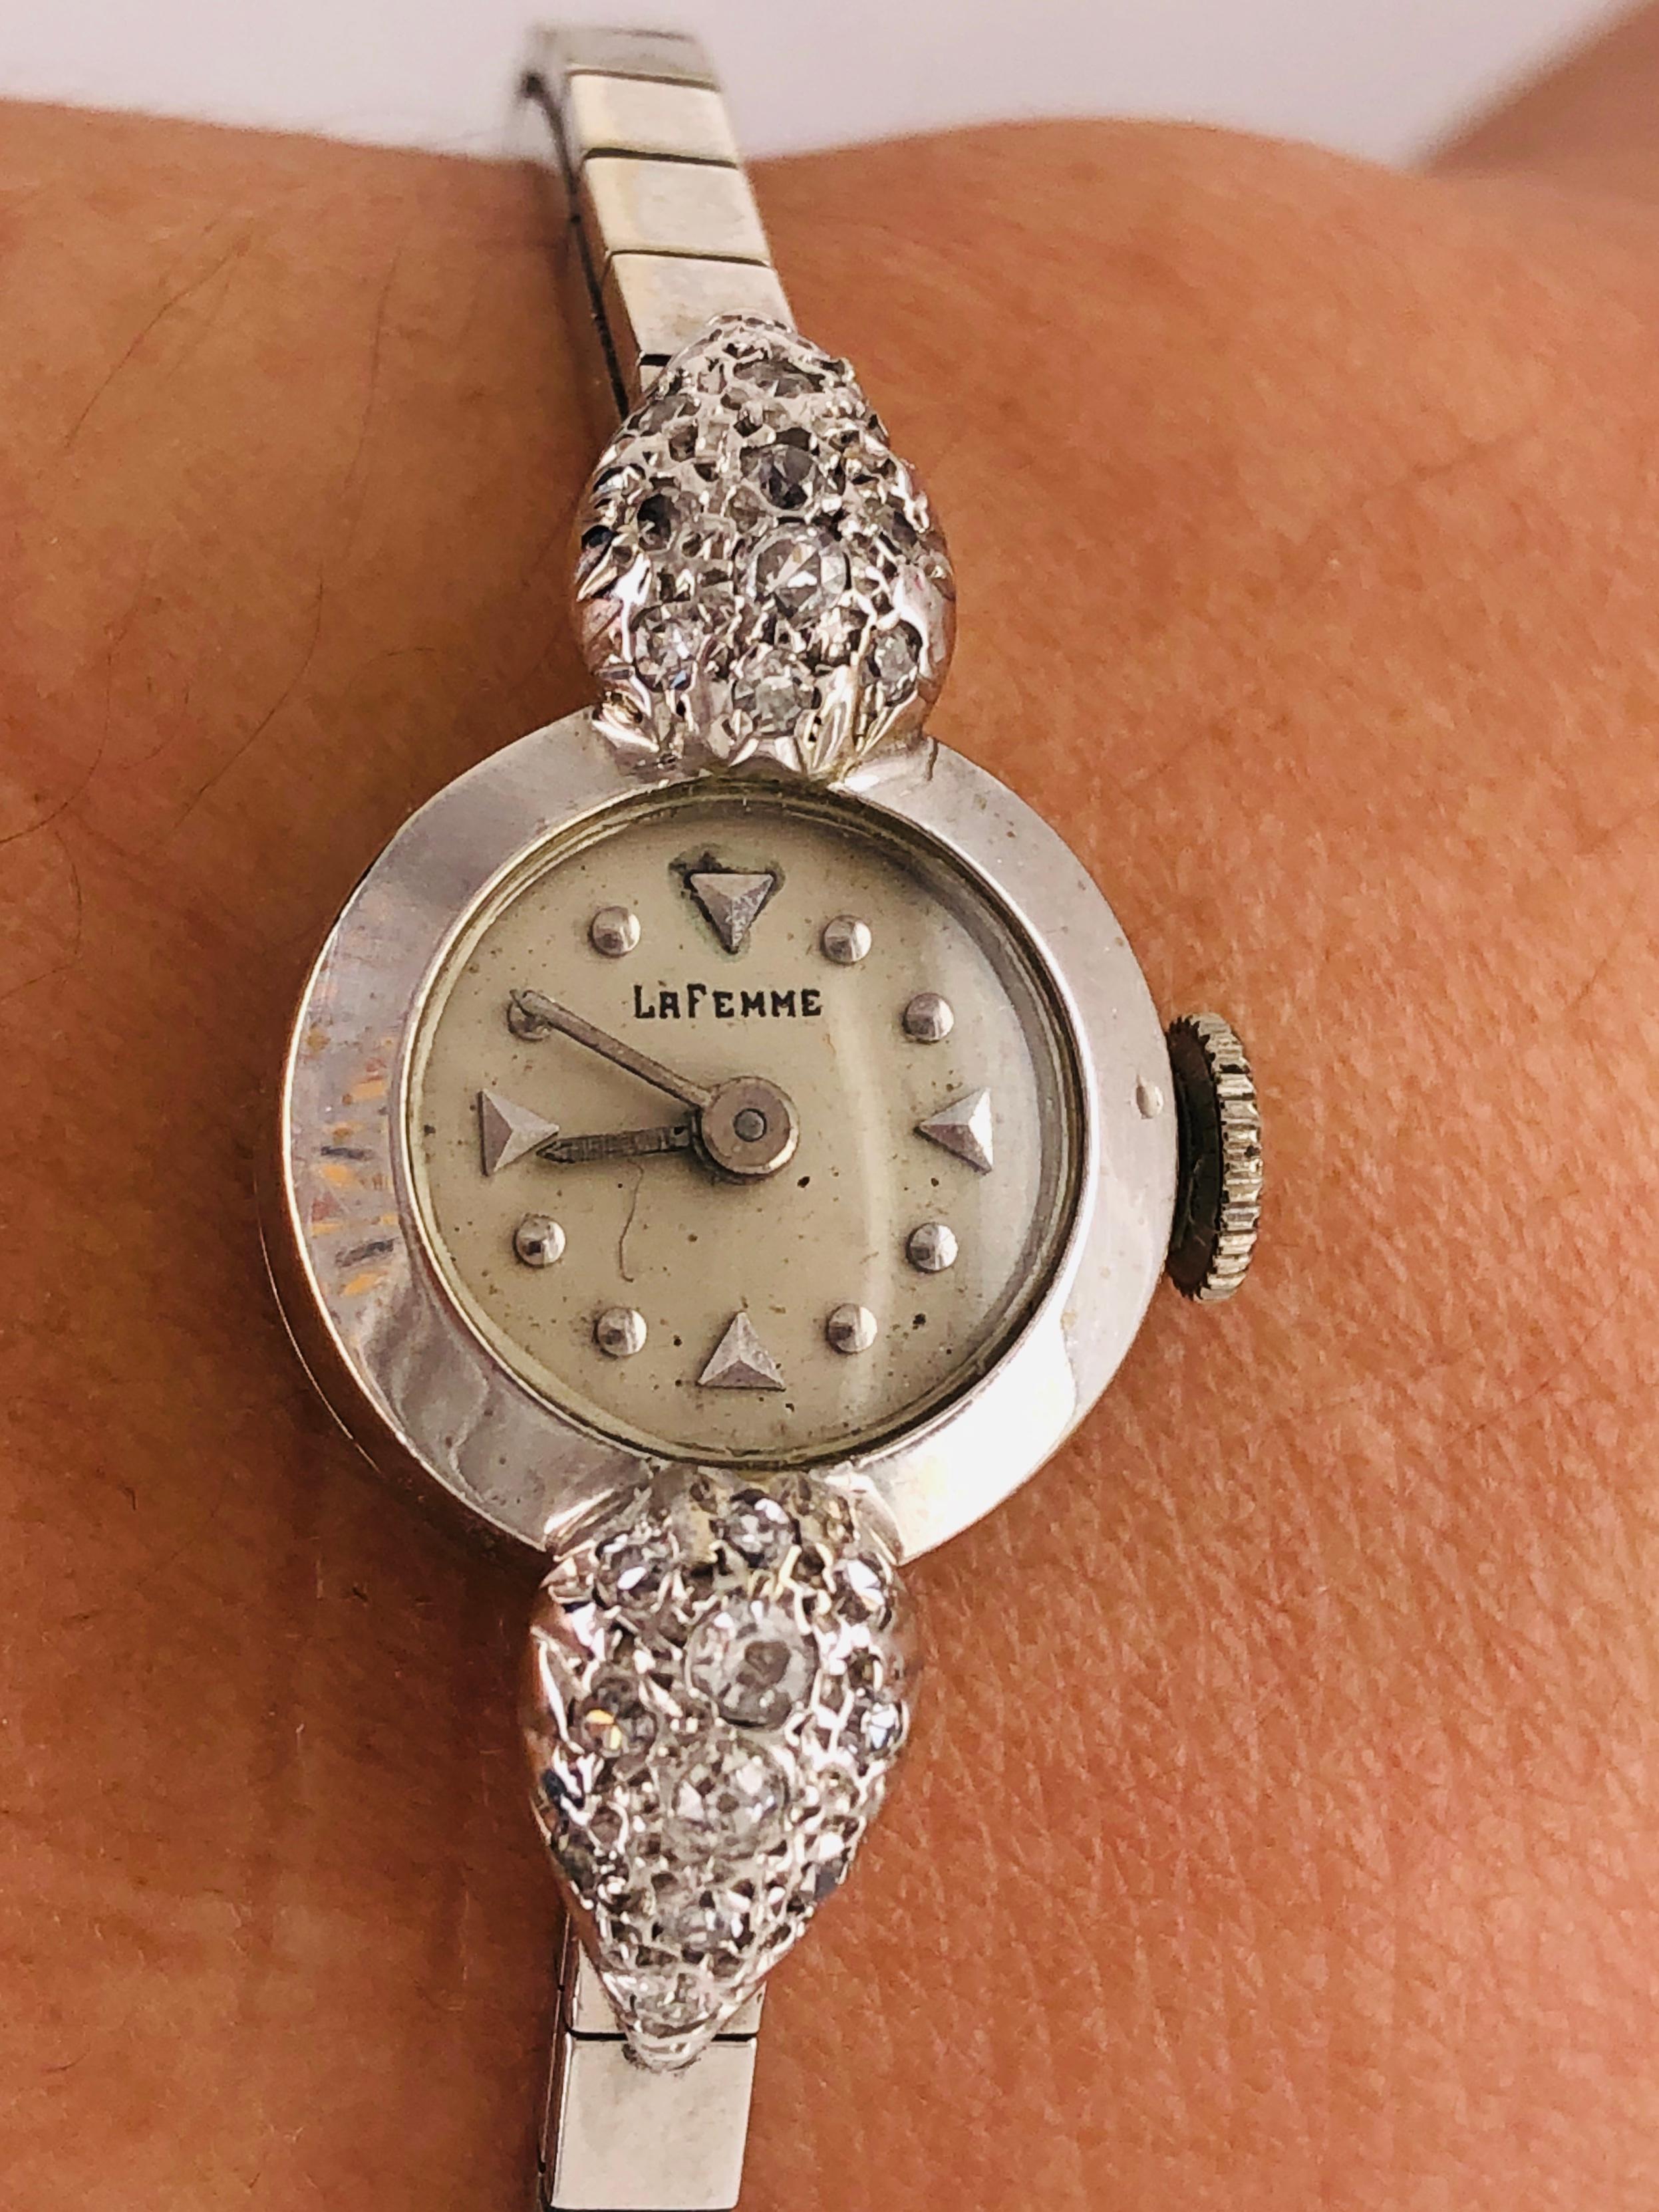 Nice petite vintage ladies watch by La Femme 14 Karat Ladies Watch 22 Total Diamonds.

